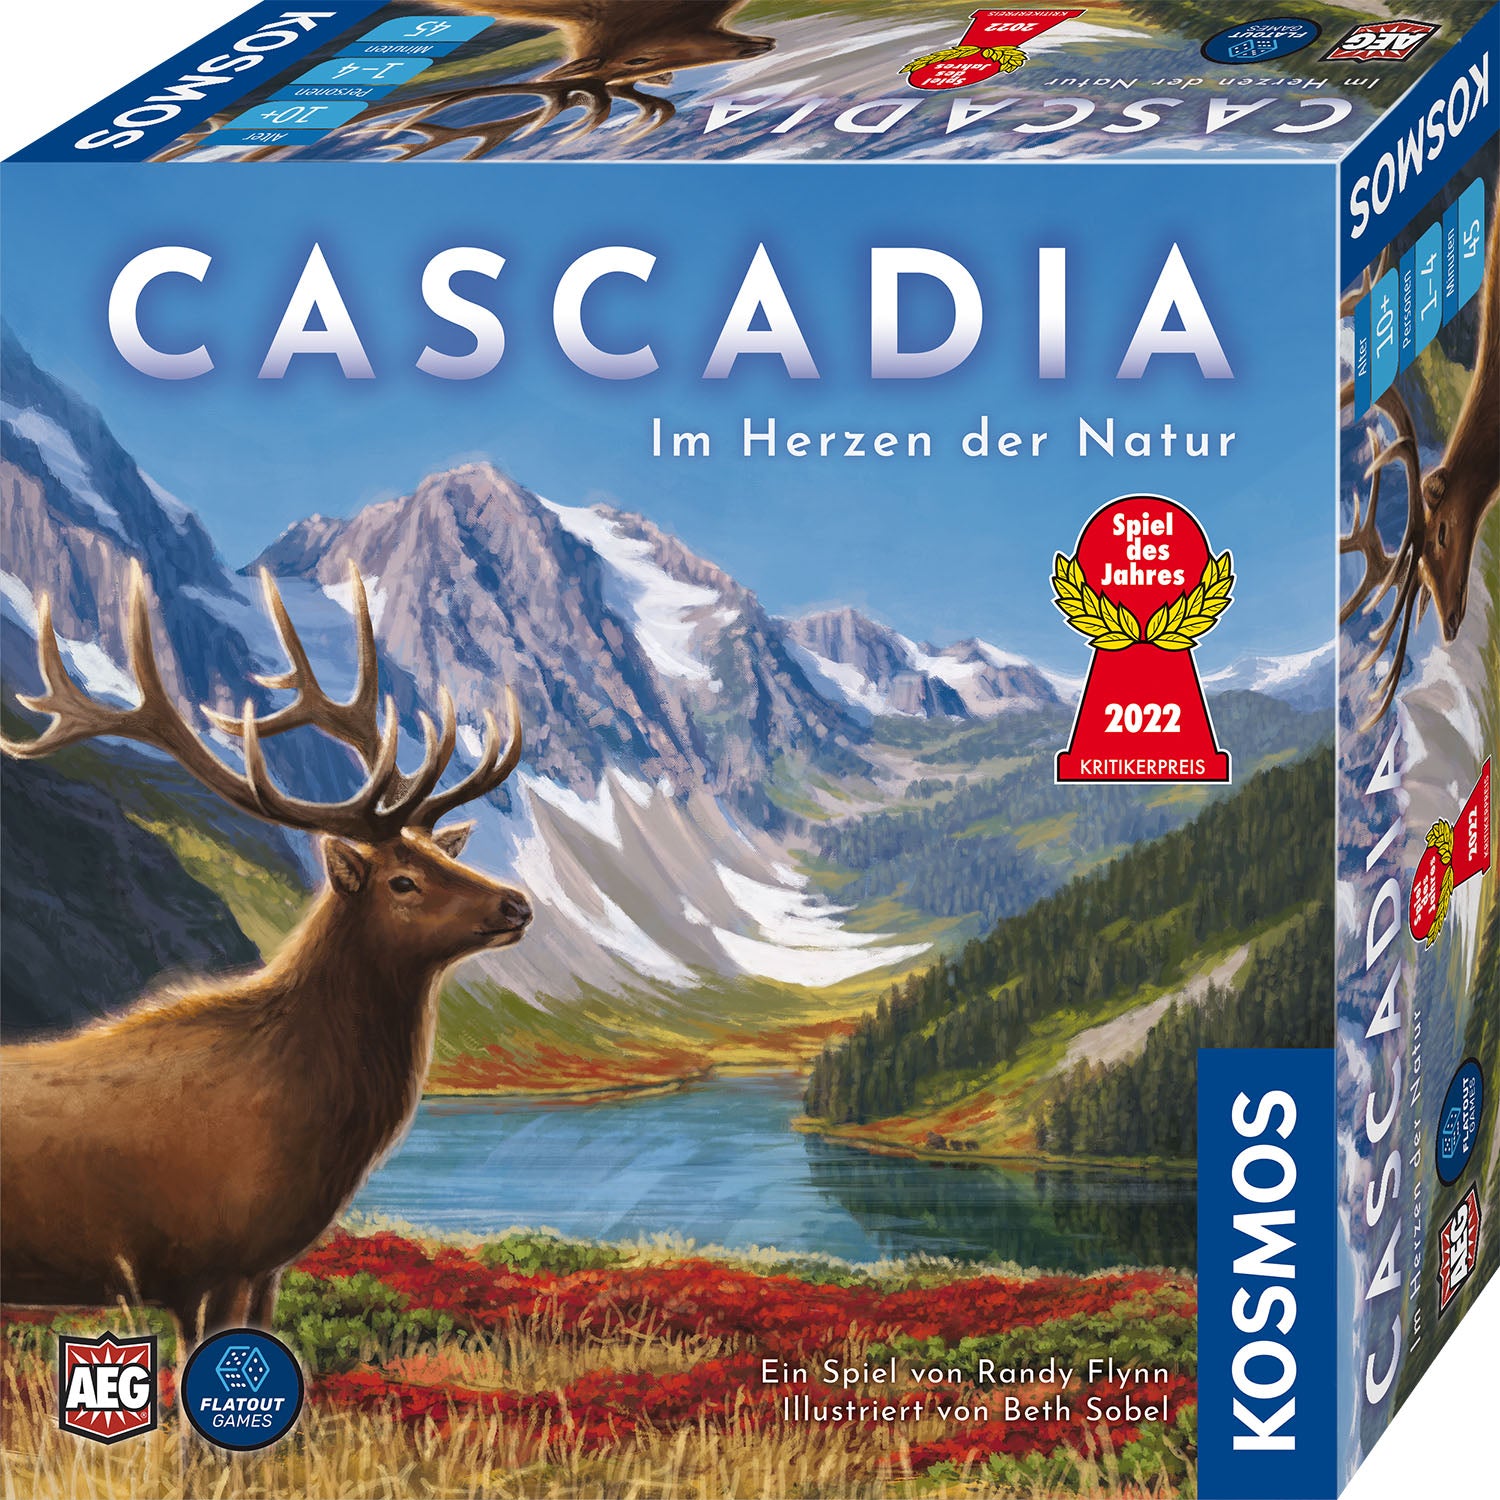 Kosmos Cascadia – Im Herzen der Natur Spiel des Jahres 2022